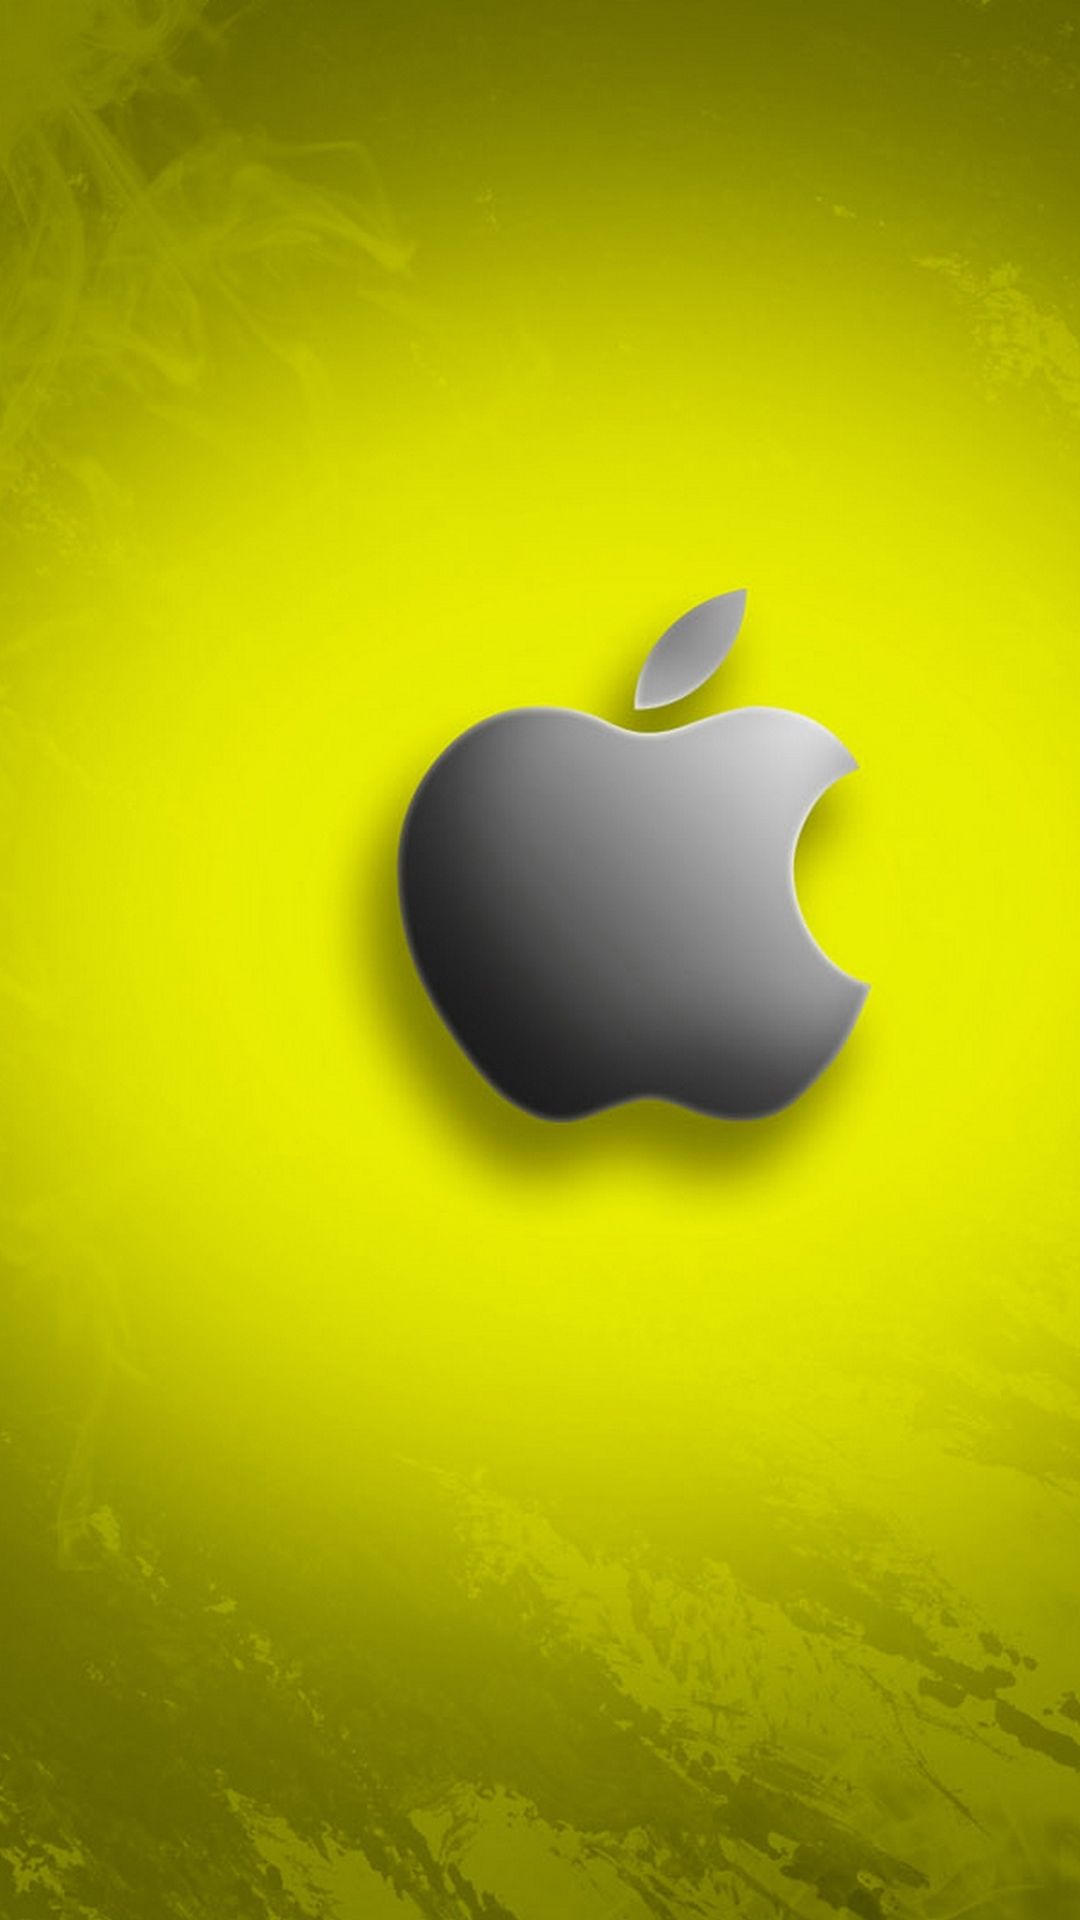 苹果logo创意手机壁纸,iPhone手机迷们快来看